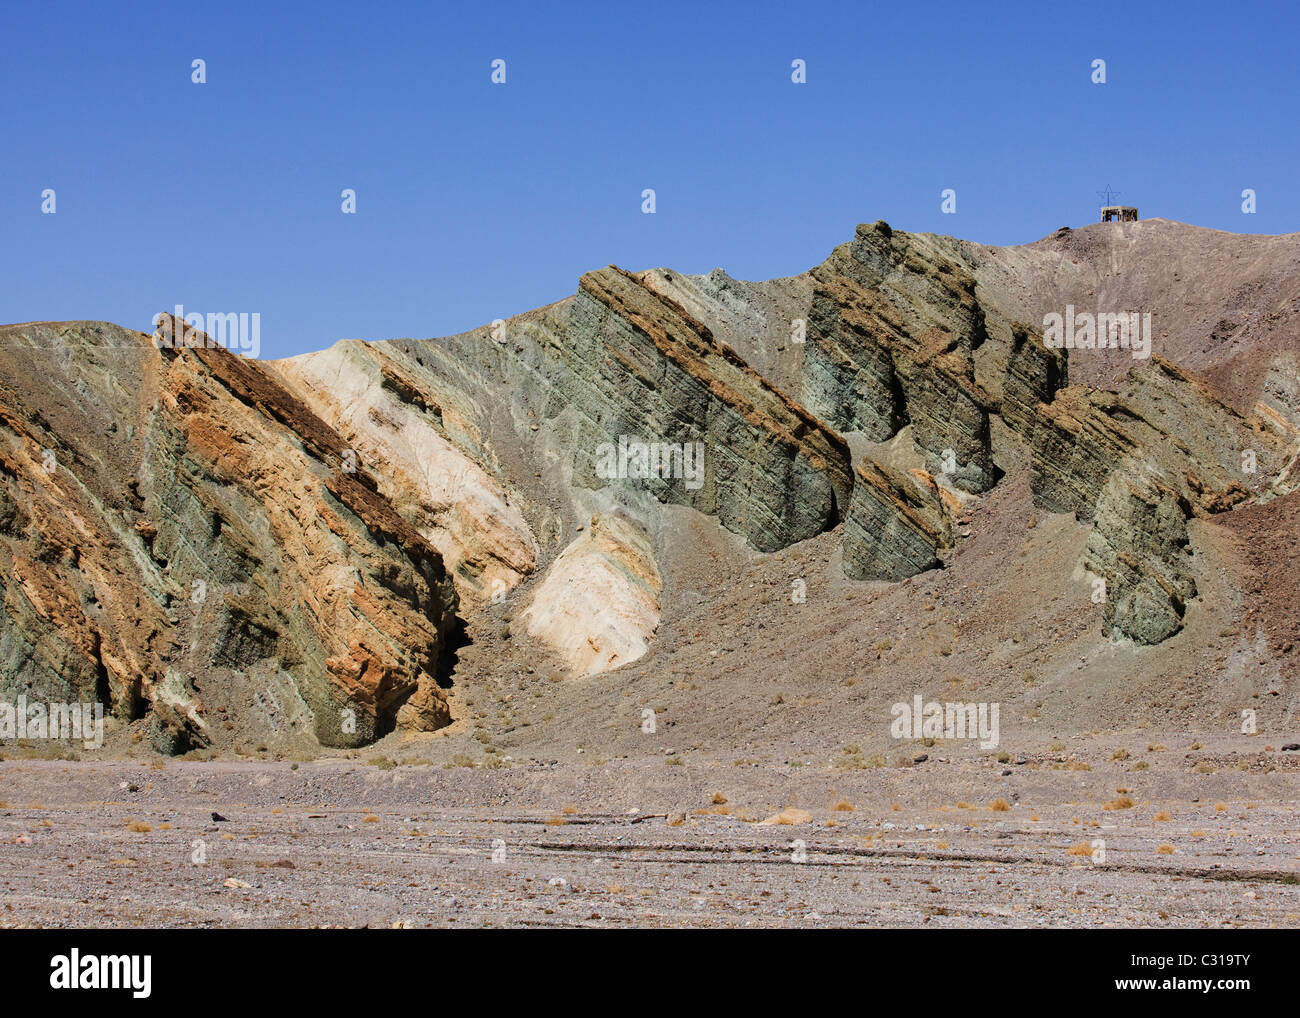 Les pentes désertiques érodés montrant des couches de roches colorées - California USA Banque D'Images